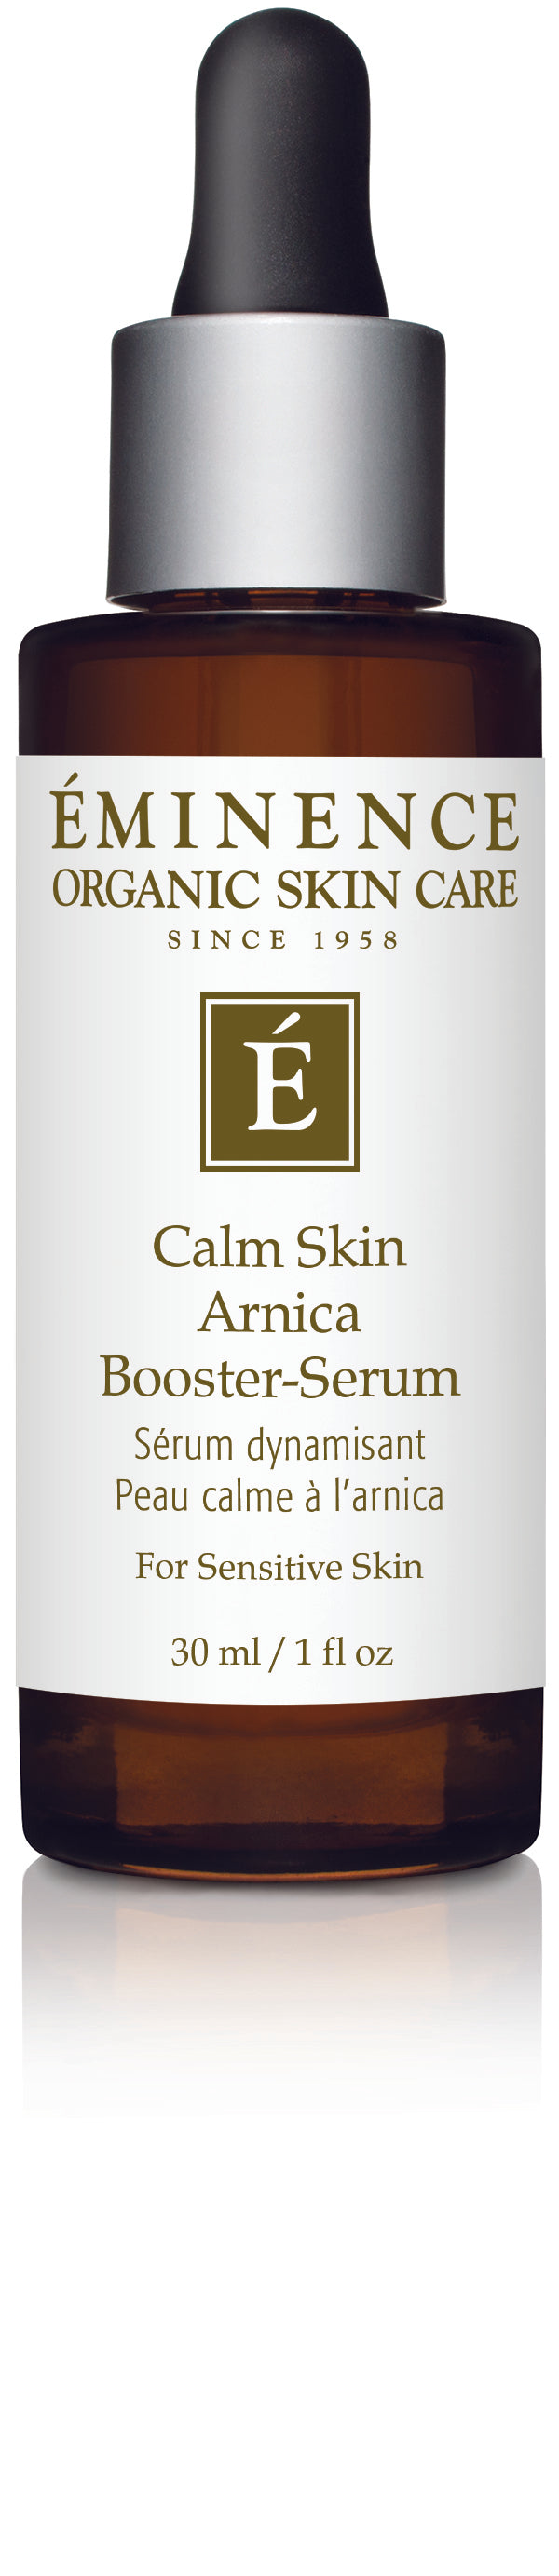 Calm Skin Arnica Booster Serum